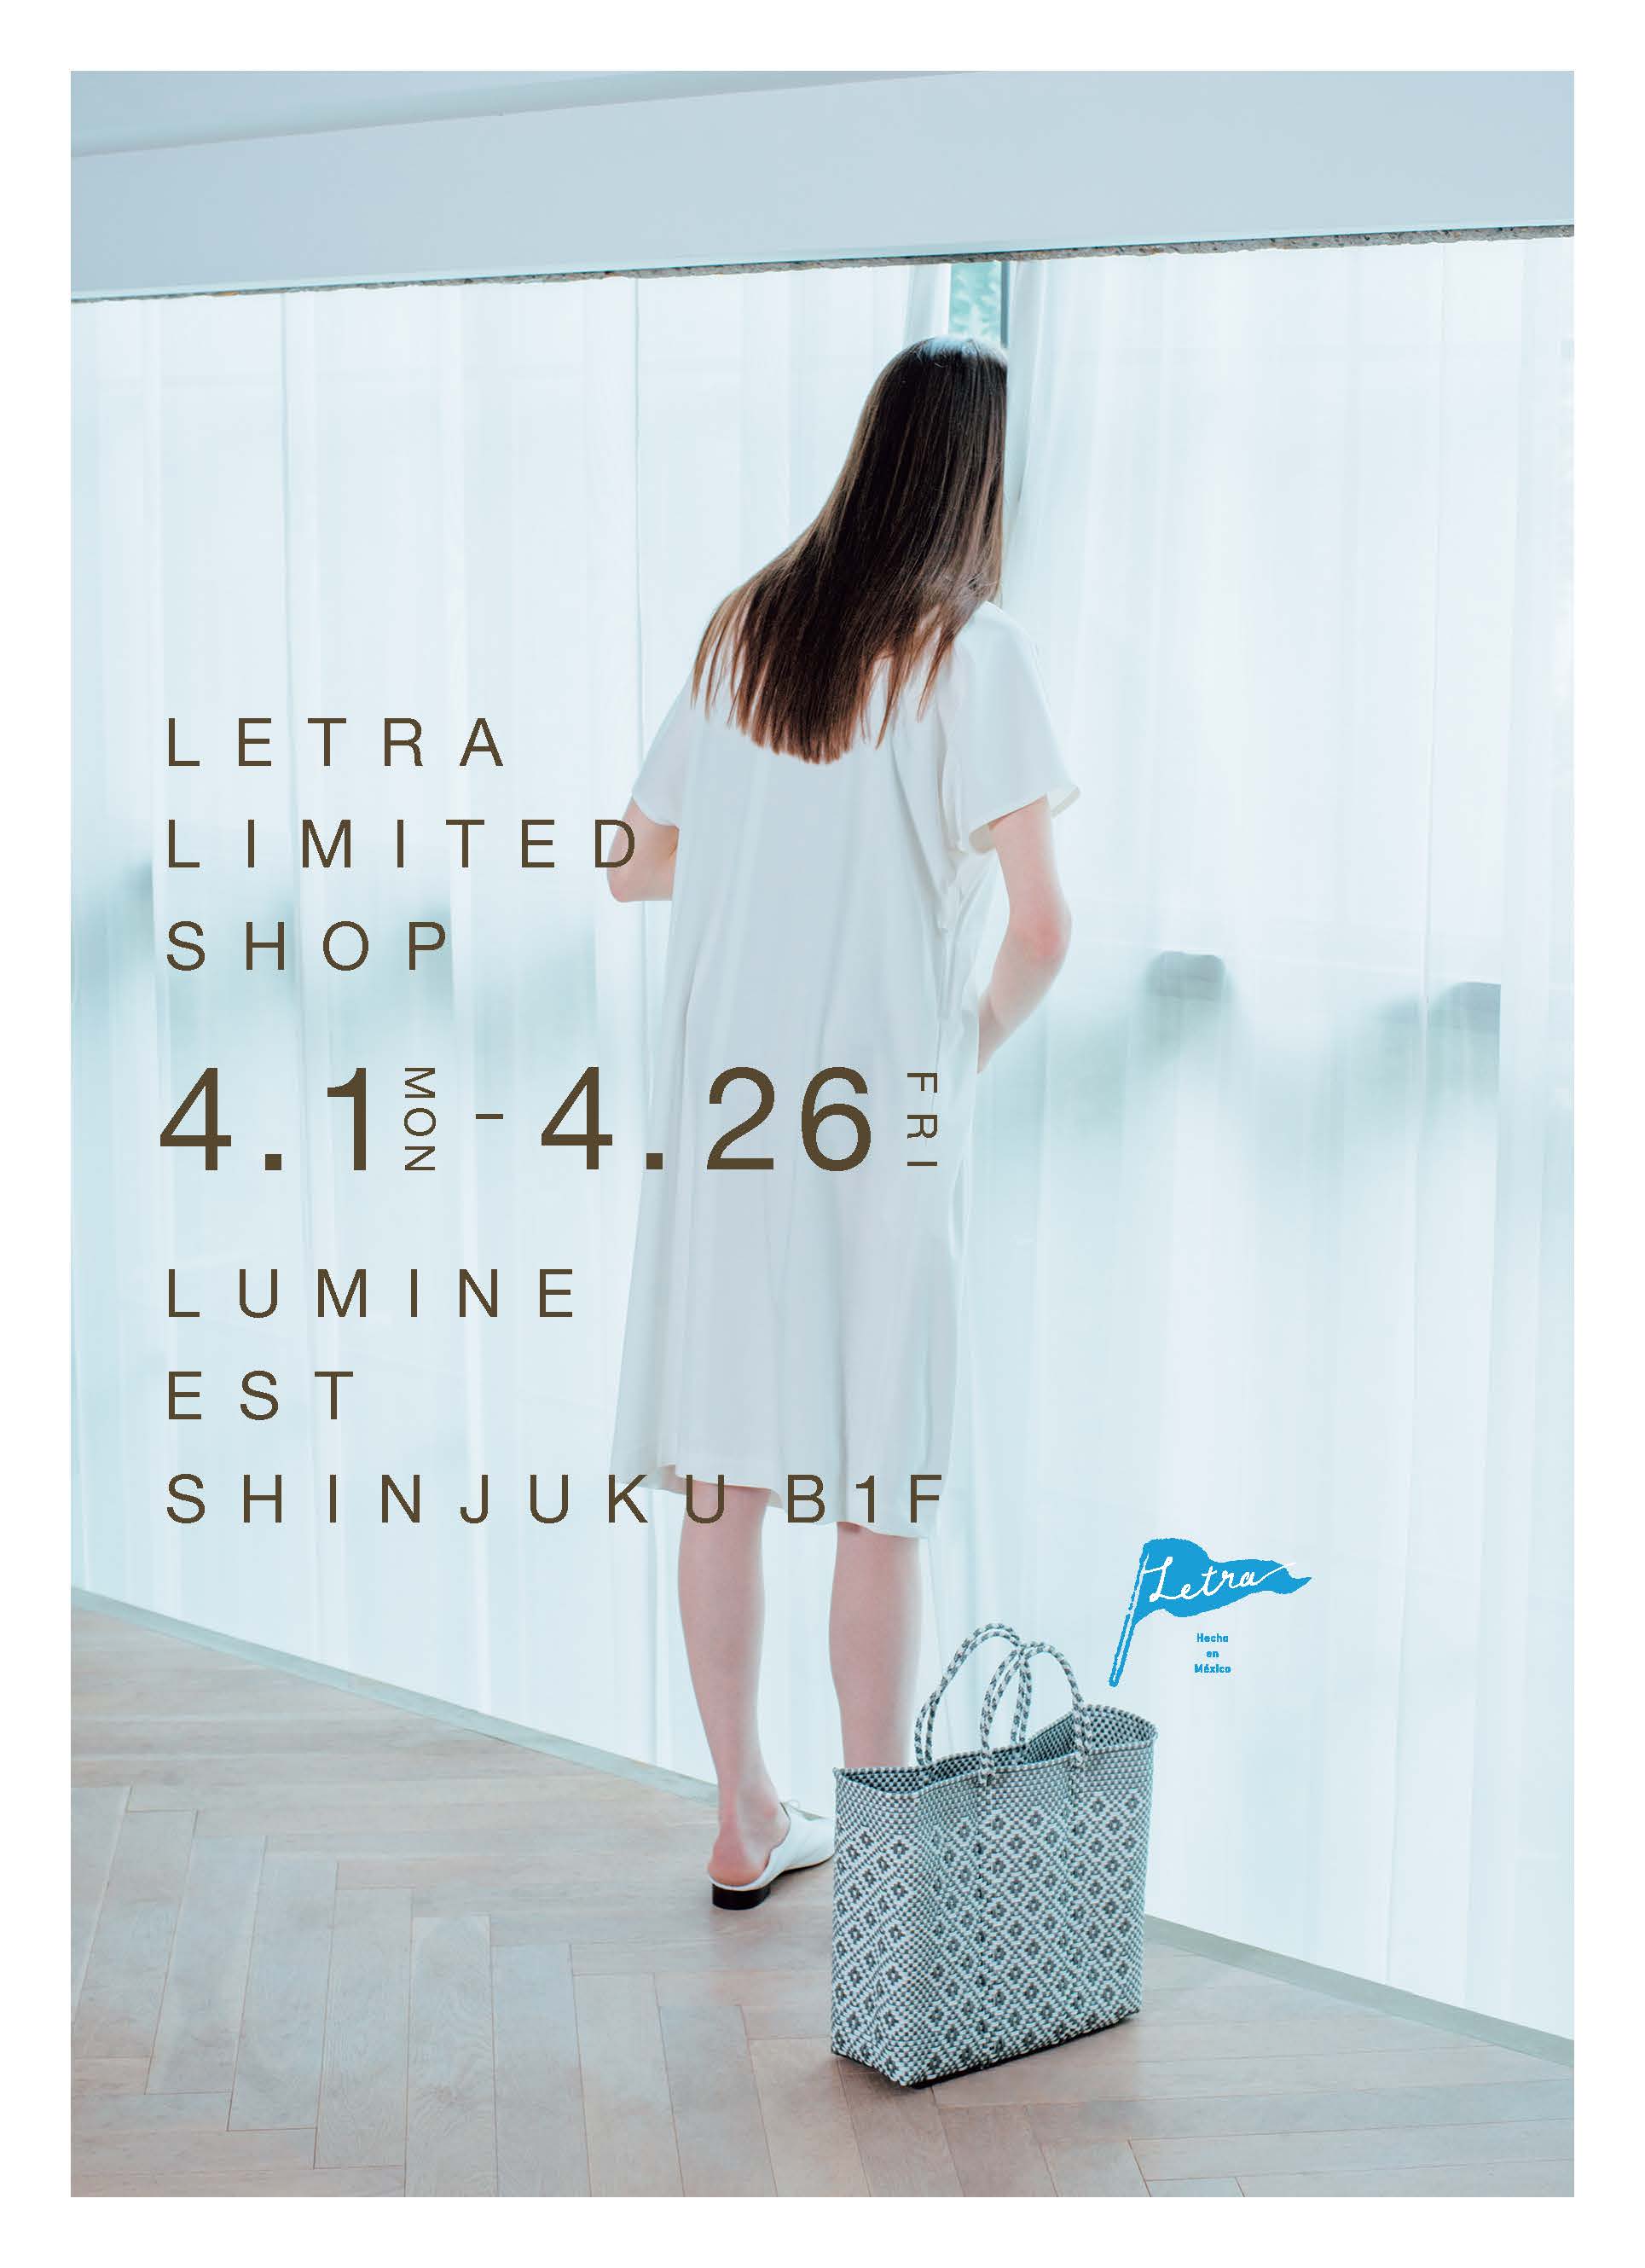 ルミネエスト新宿地下1階 Letra Limited Shop OPEN！